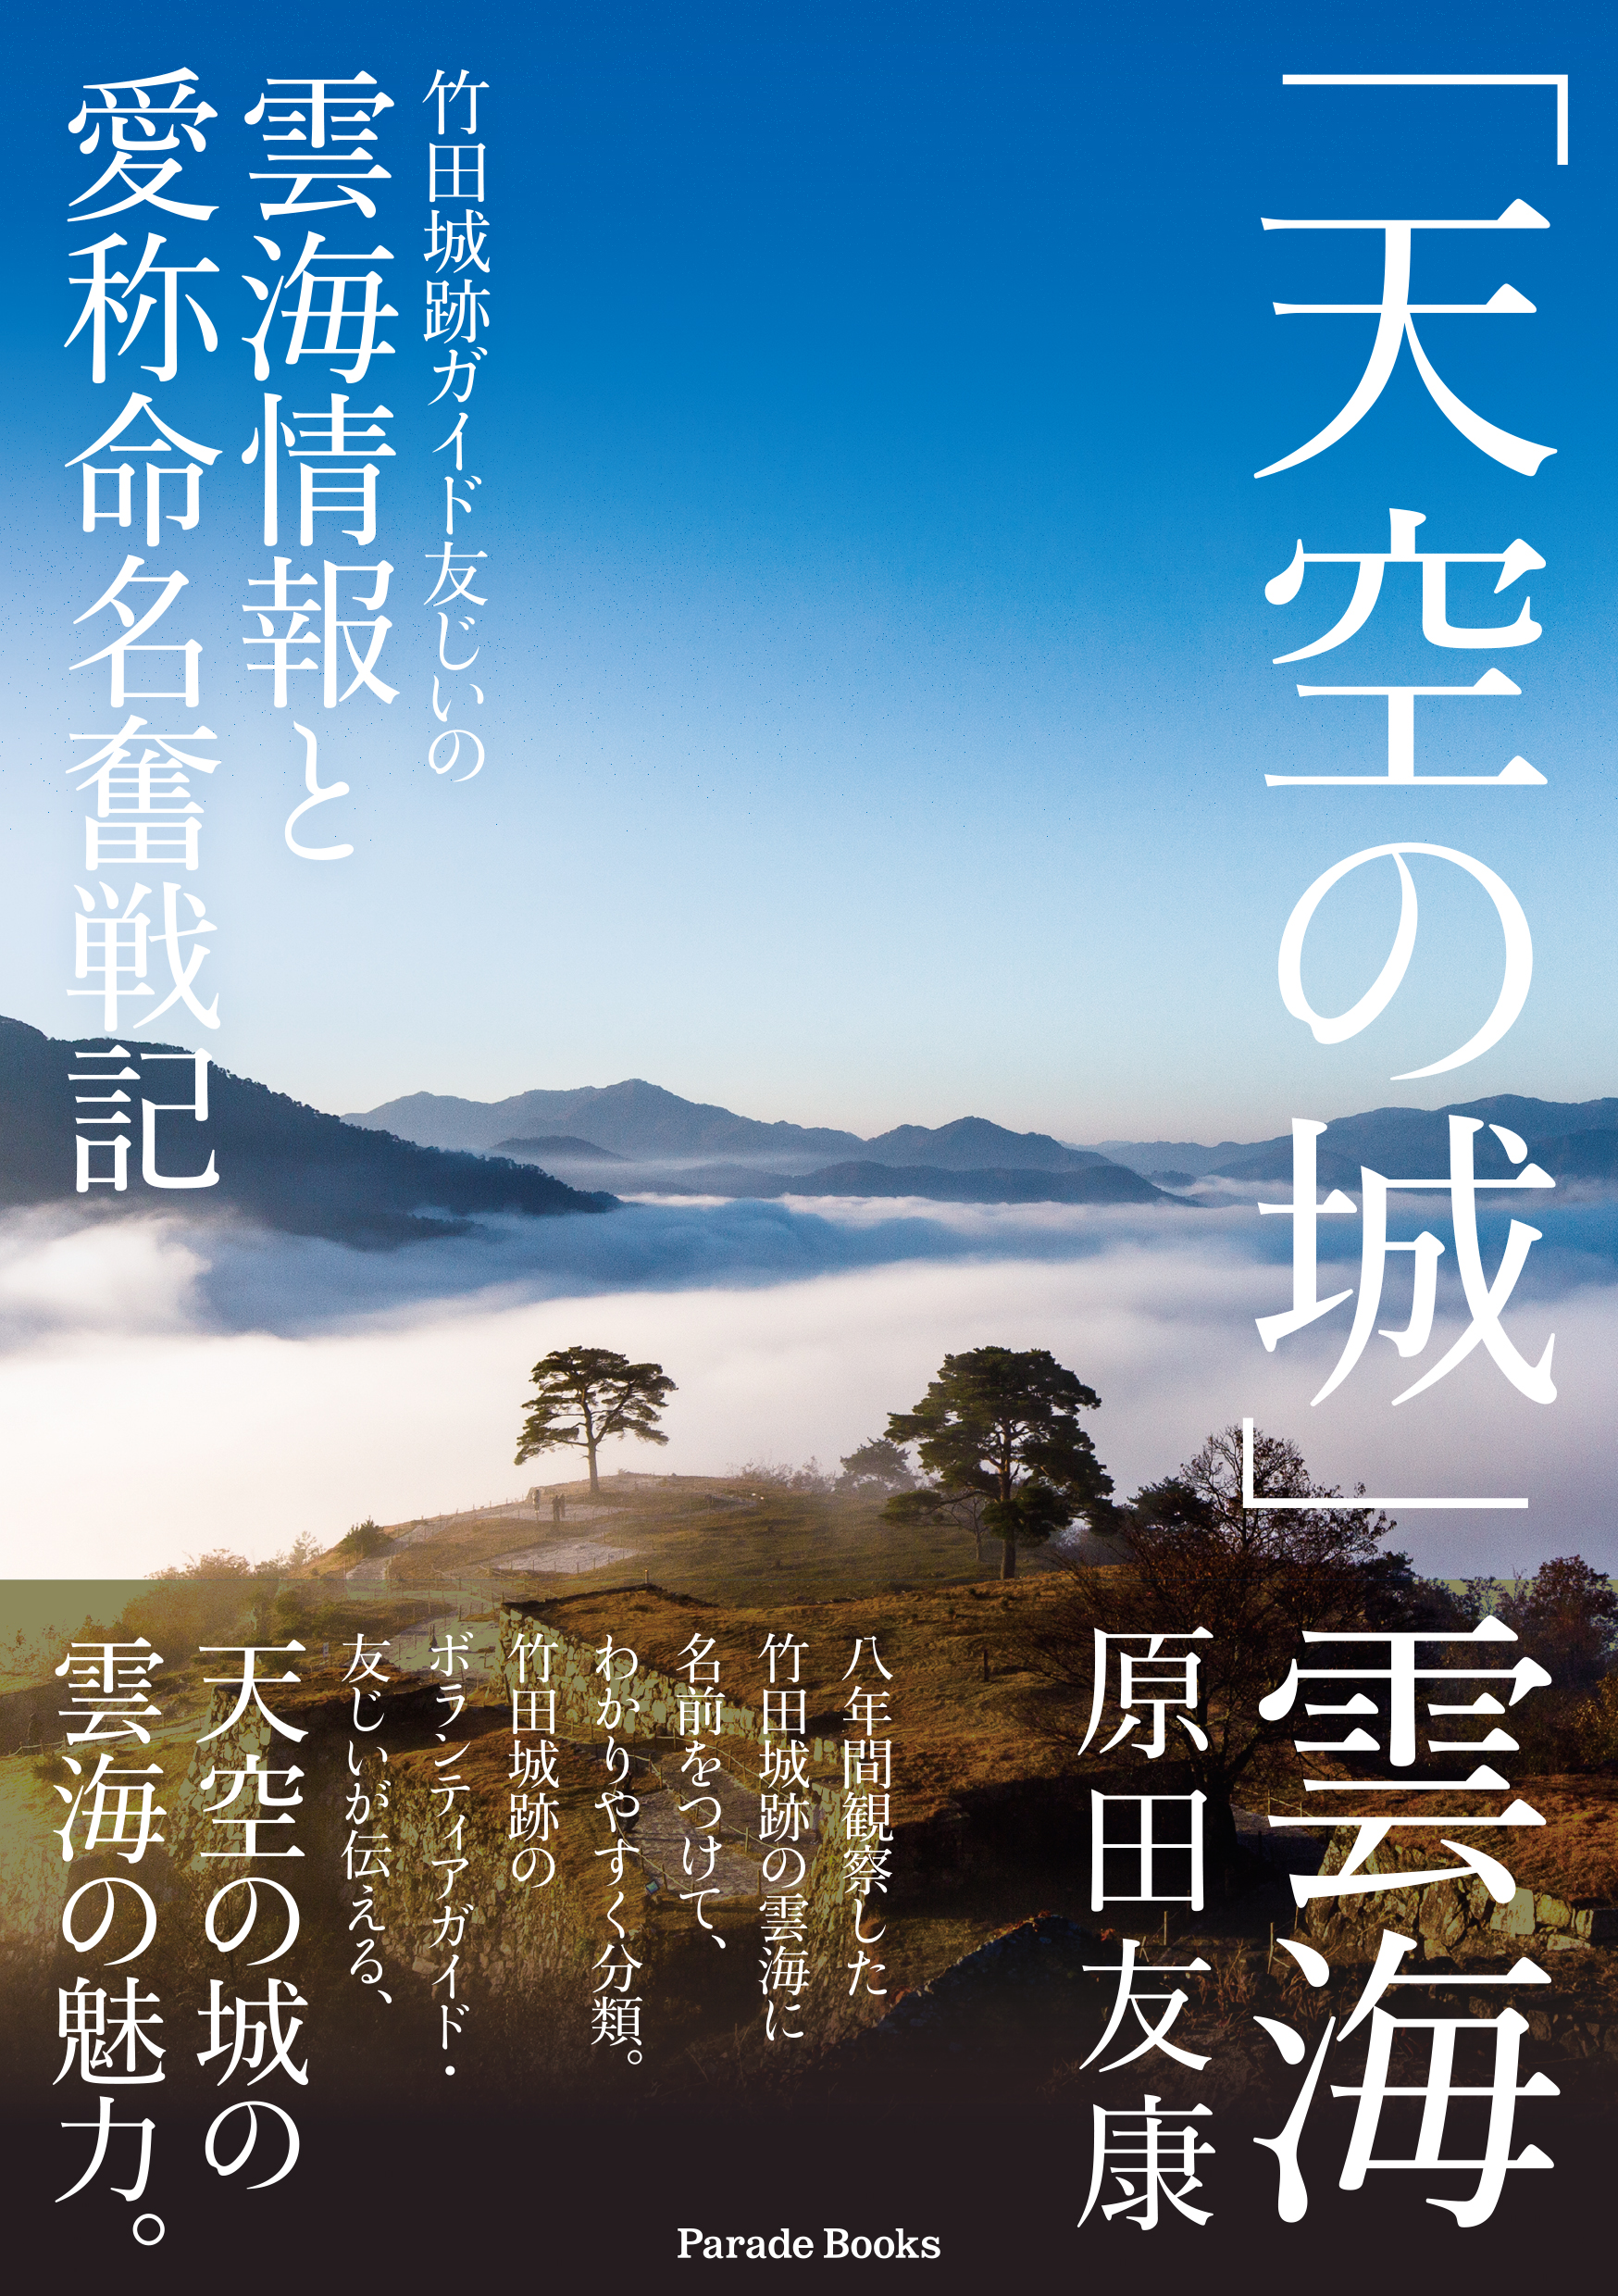 天空の城 竹田城跡のボランティアガイドが8年間観察し続けてきた雲海情報をまとめたデータブックが発売 株式会社パレードのプレスリリース